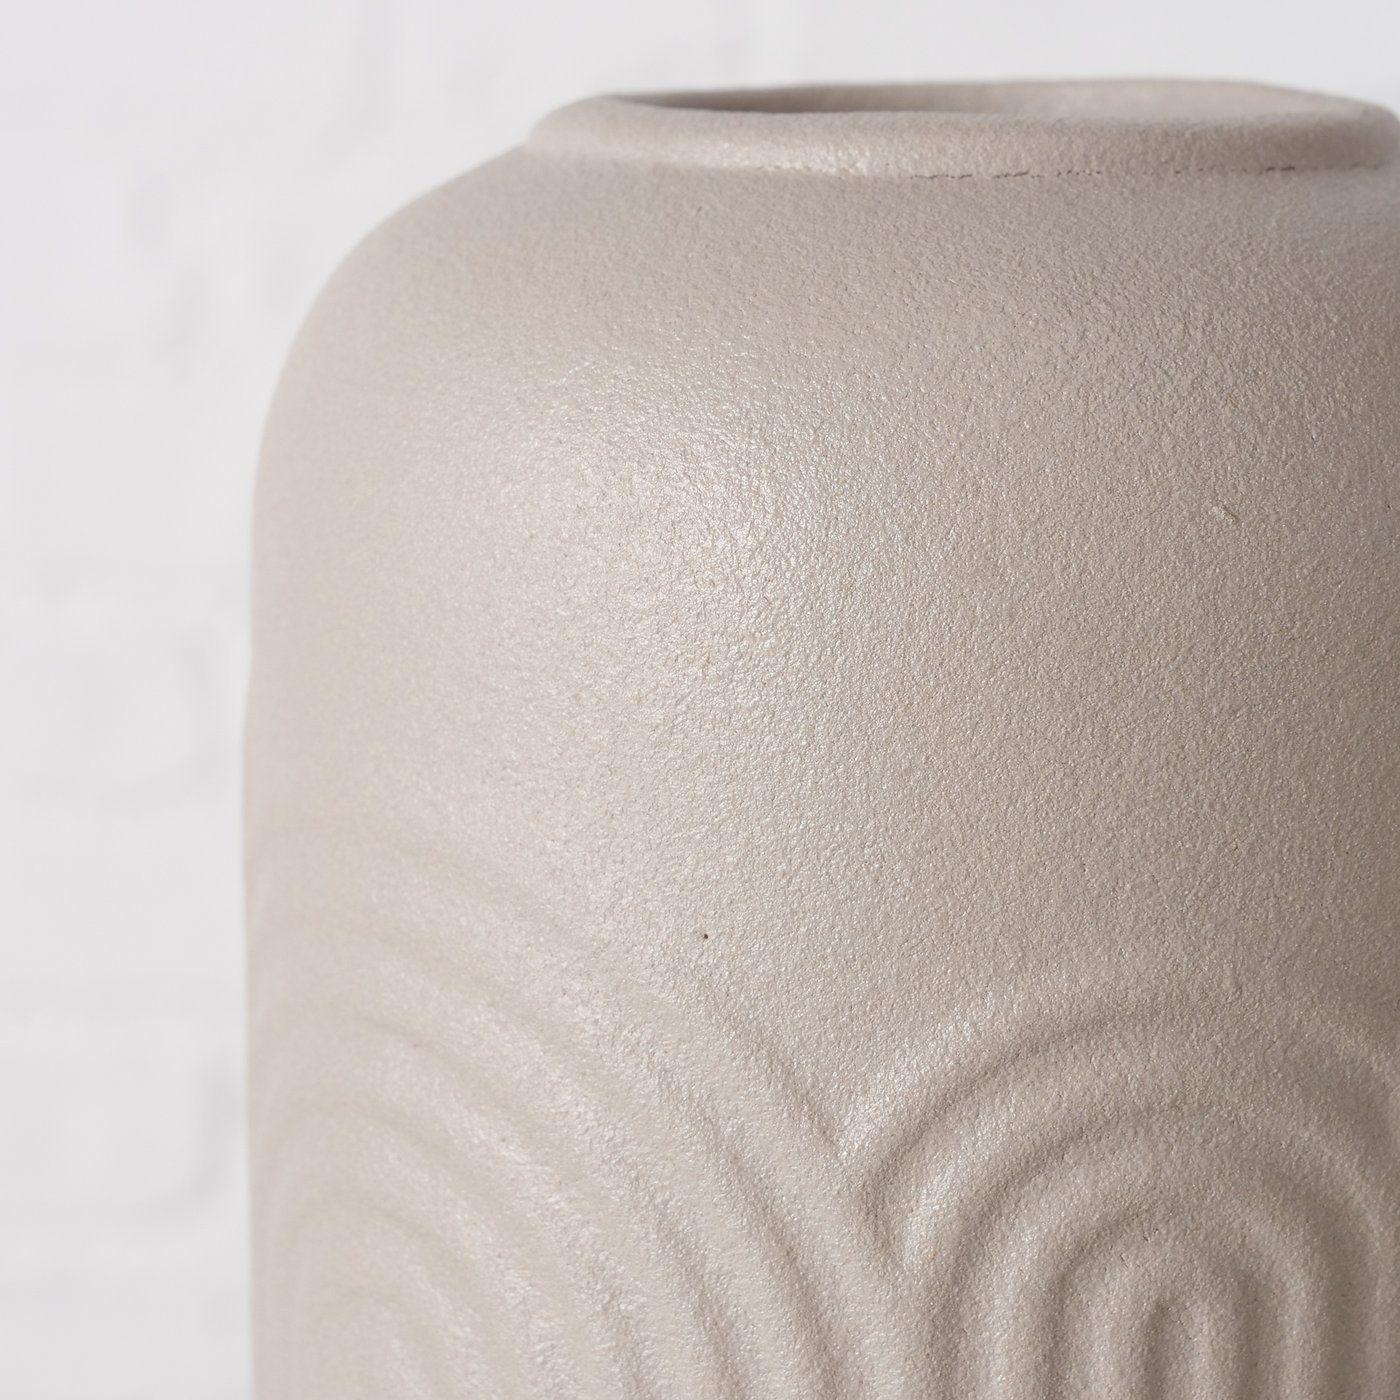 BOLTZE Dekovase 2er Set St) Vase (2 Blumenvase "Aliette" aus braun/beige matt, in Keramik